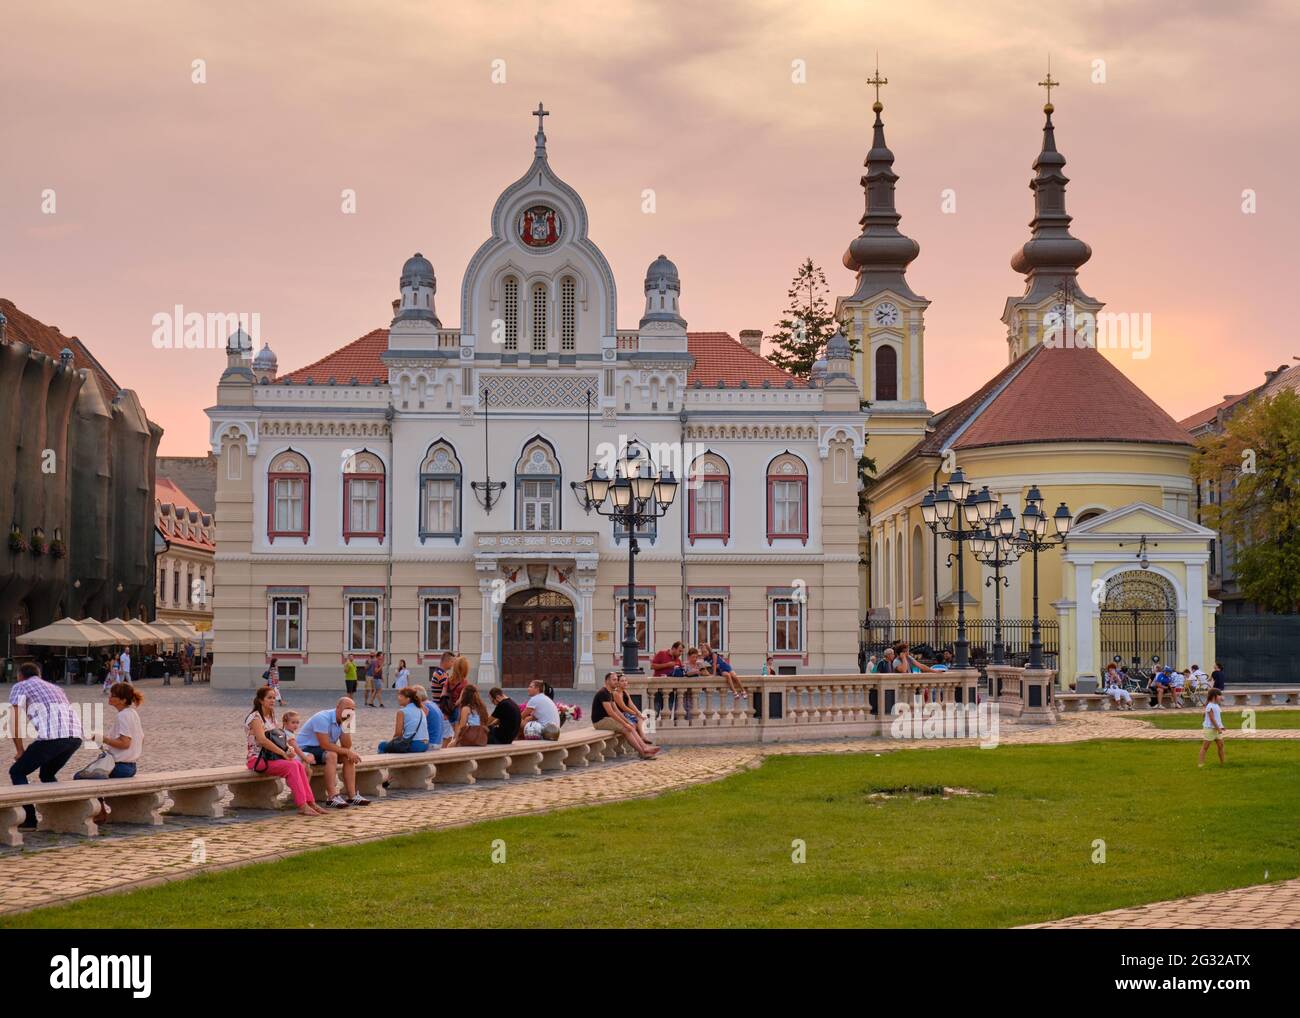 El Palacio Episcopal Ortodoxo Serbio en Union Square, Timisoara, Rumania Foto de stock